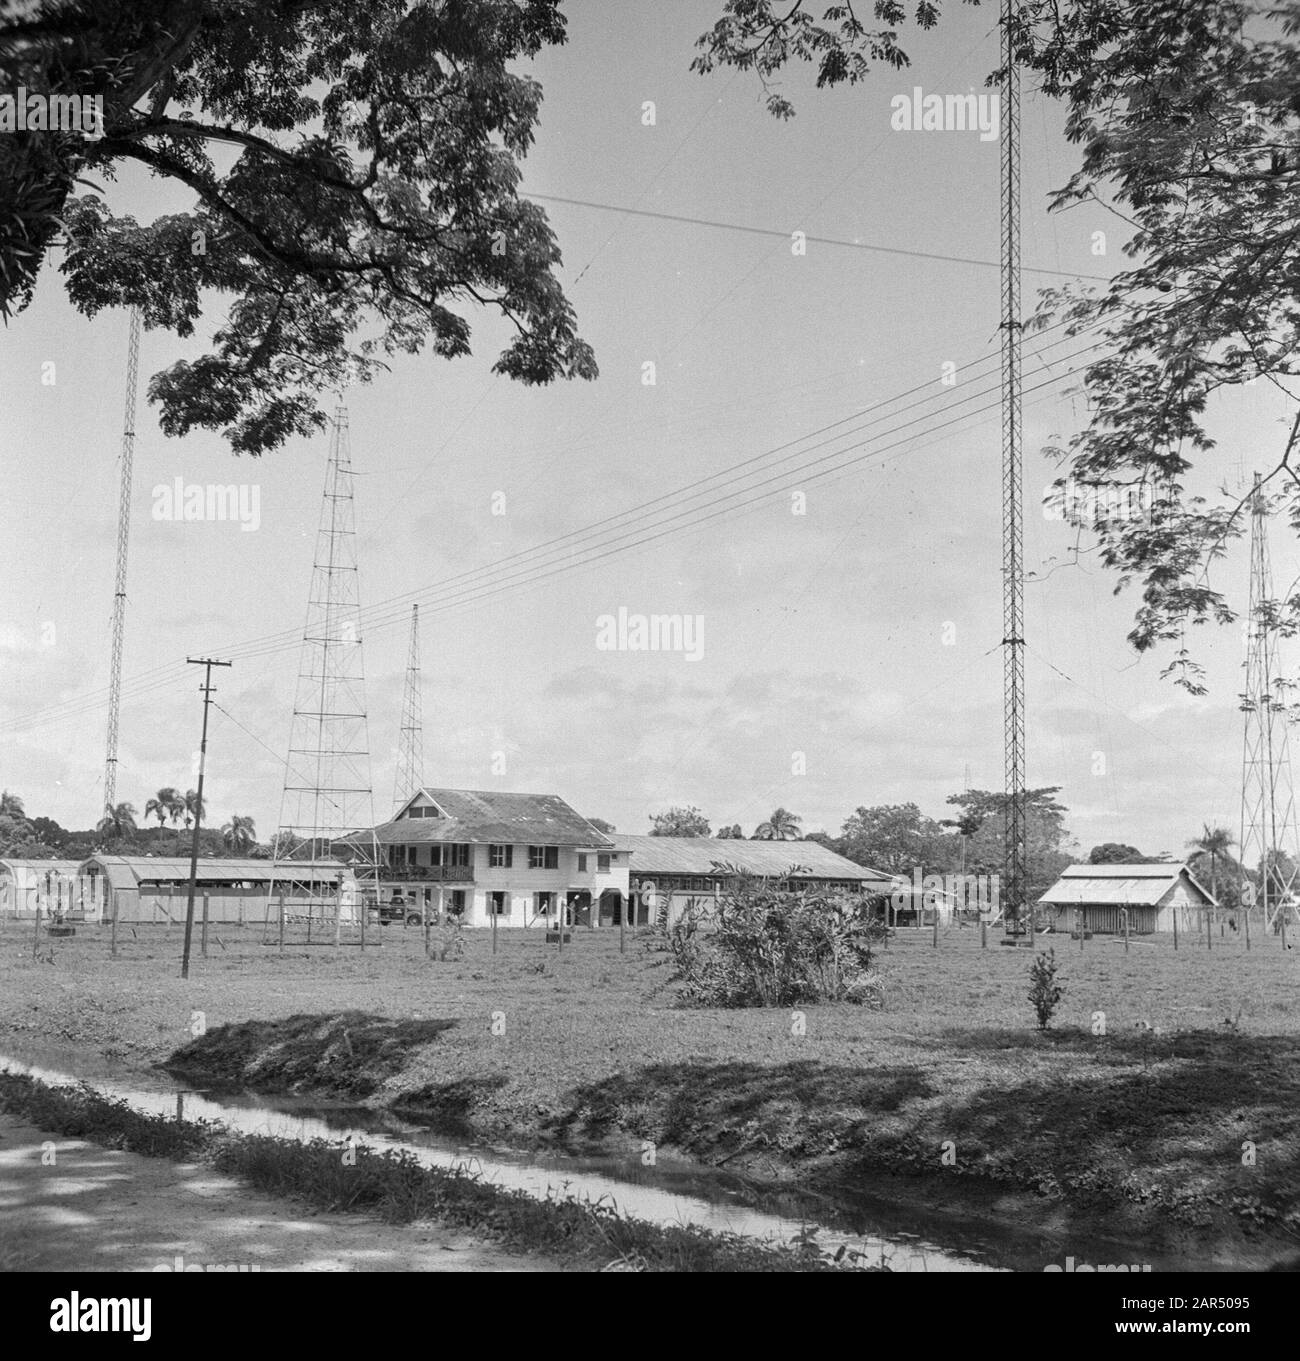 Viaggiare a Suriname e il complesso delle Antille Olandesi nel Suriname Data: 1947 luogo: Suriname Parole Chiave: Edifici Foto Stock